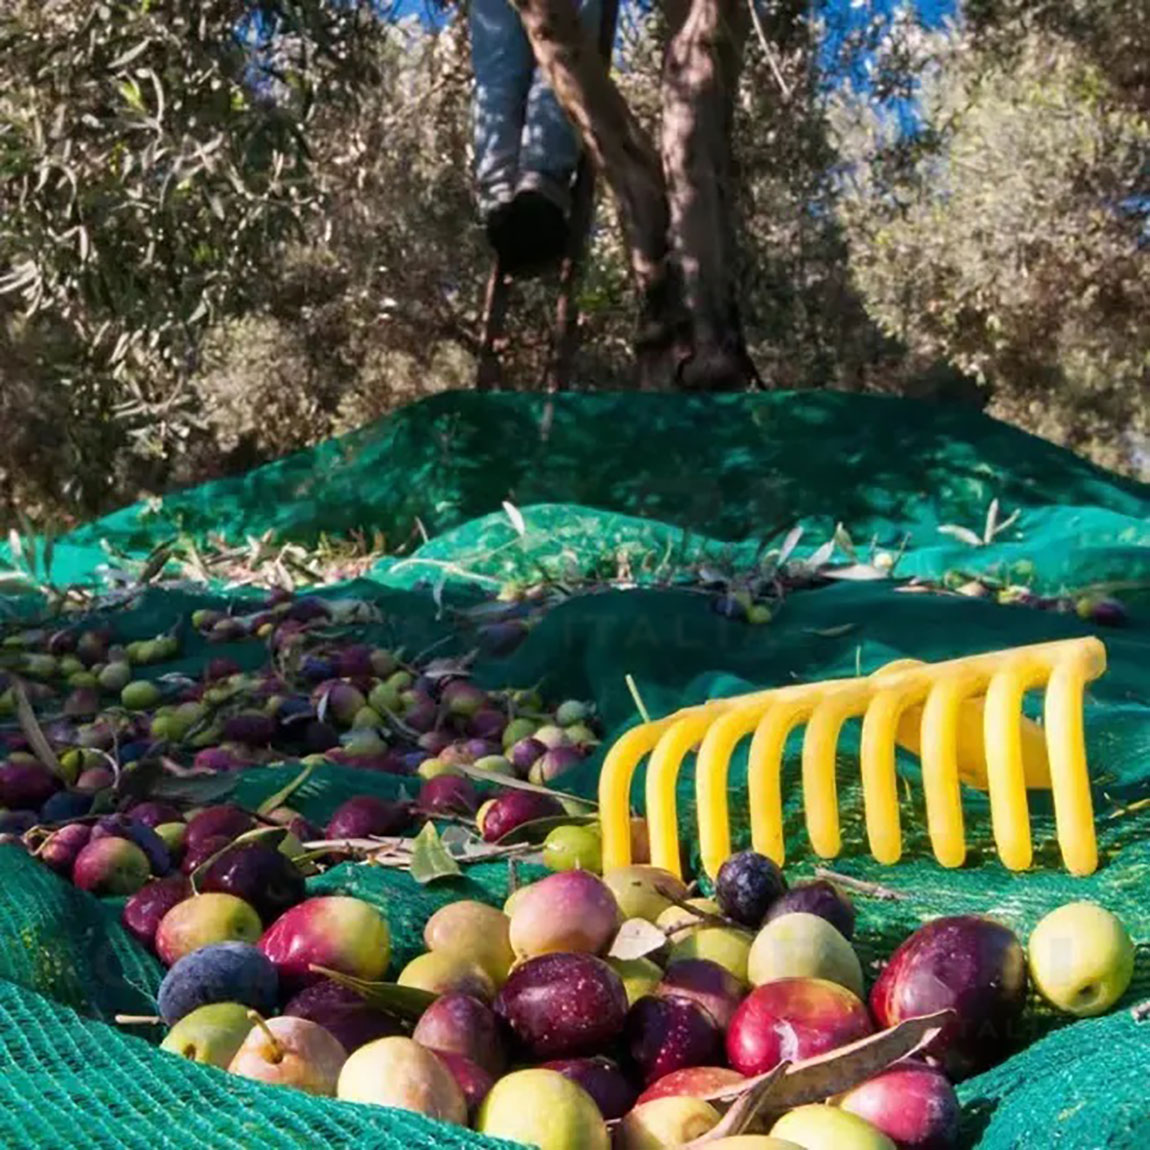 Rete raccolta olive 12 x 12 antispine 95 gr con spacco tipo pugliese rete per raccolta olive